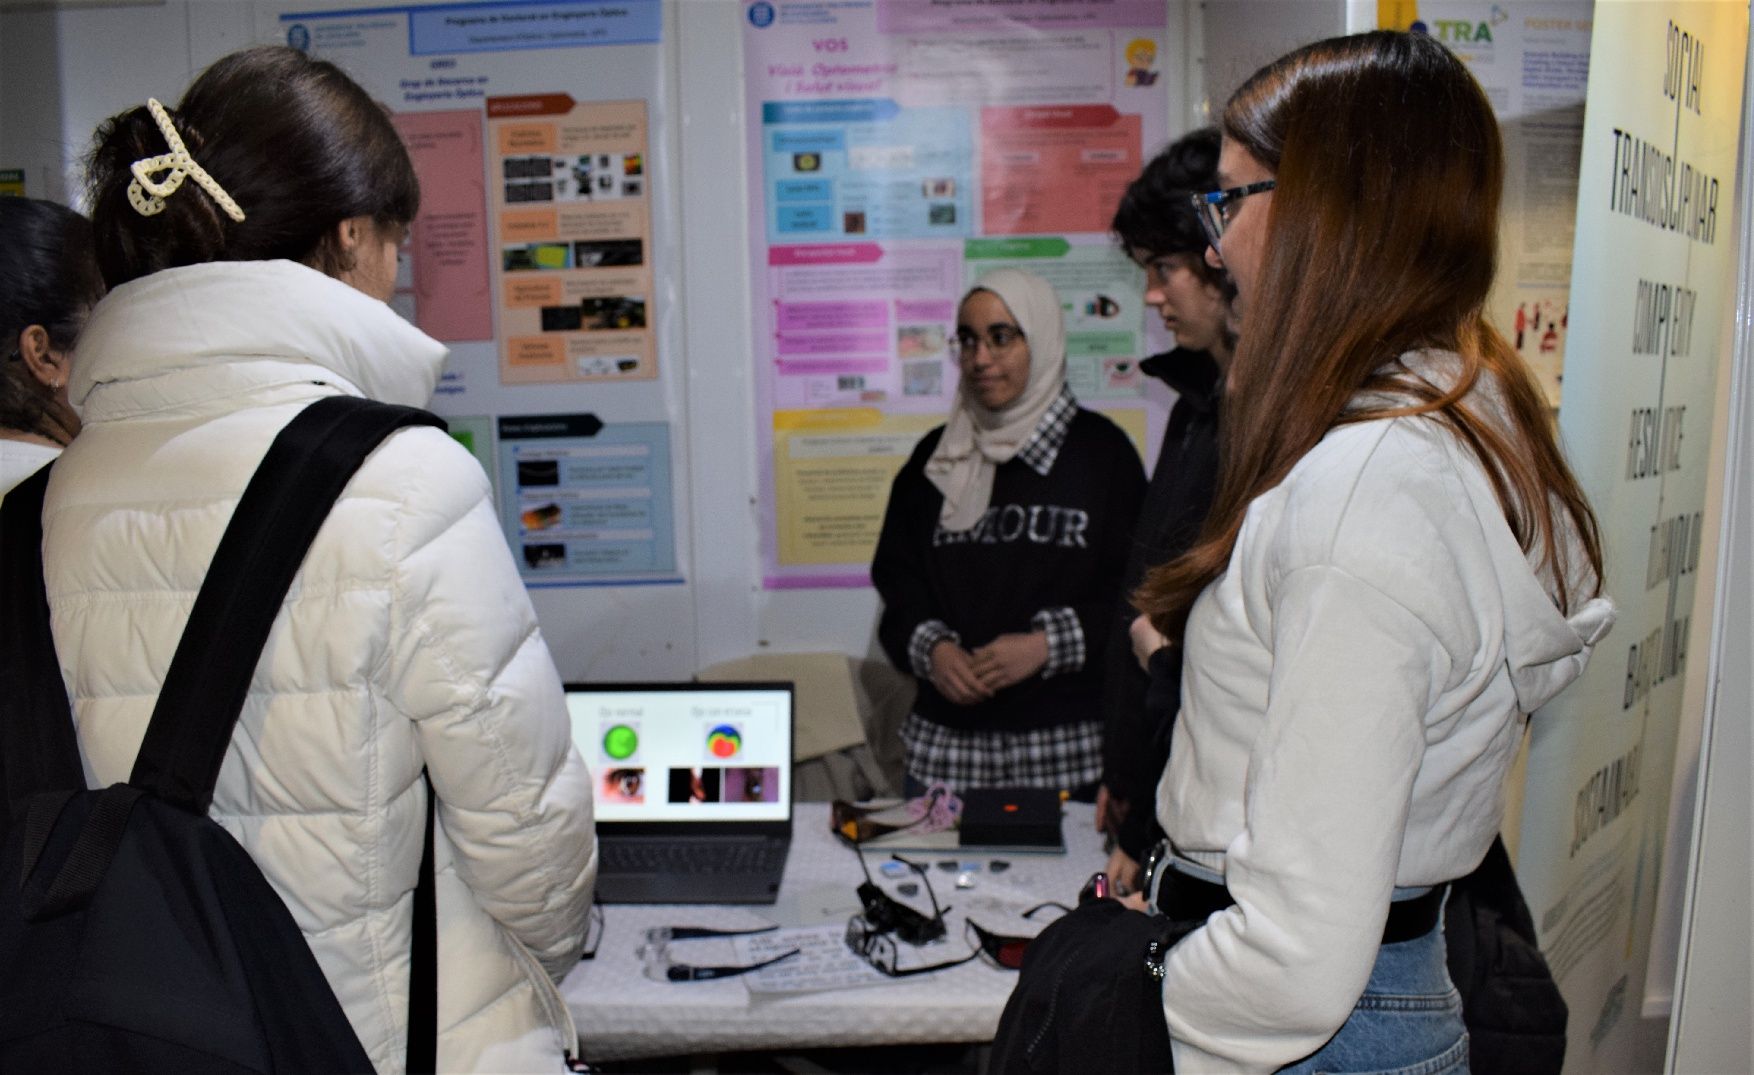 Els estudiants descobreixen projectes científics a la Fira del Coneixement de Berga